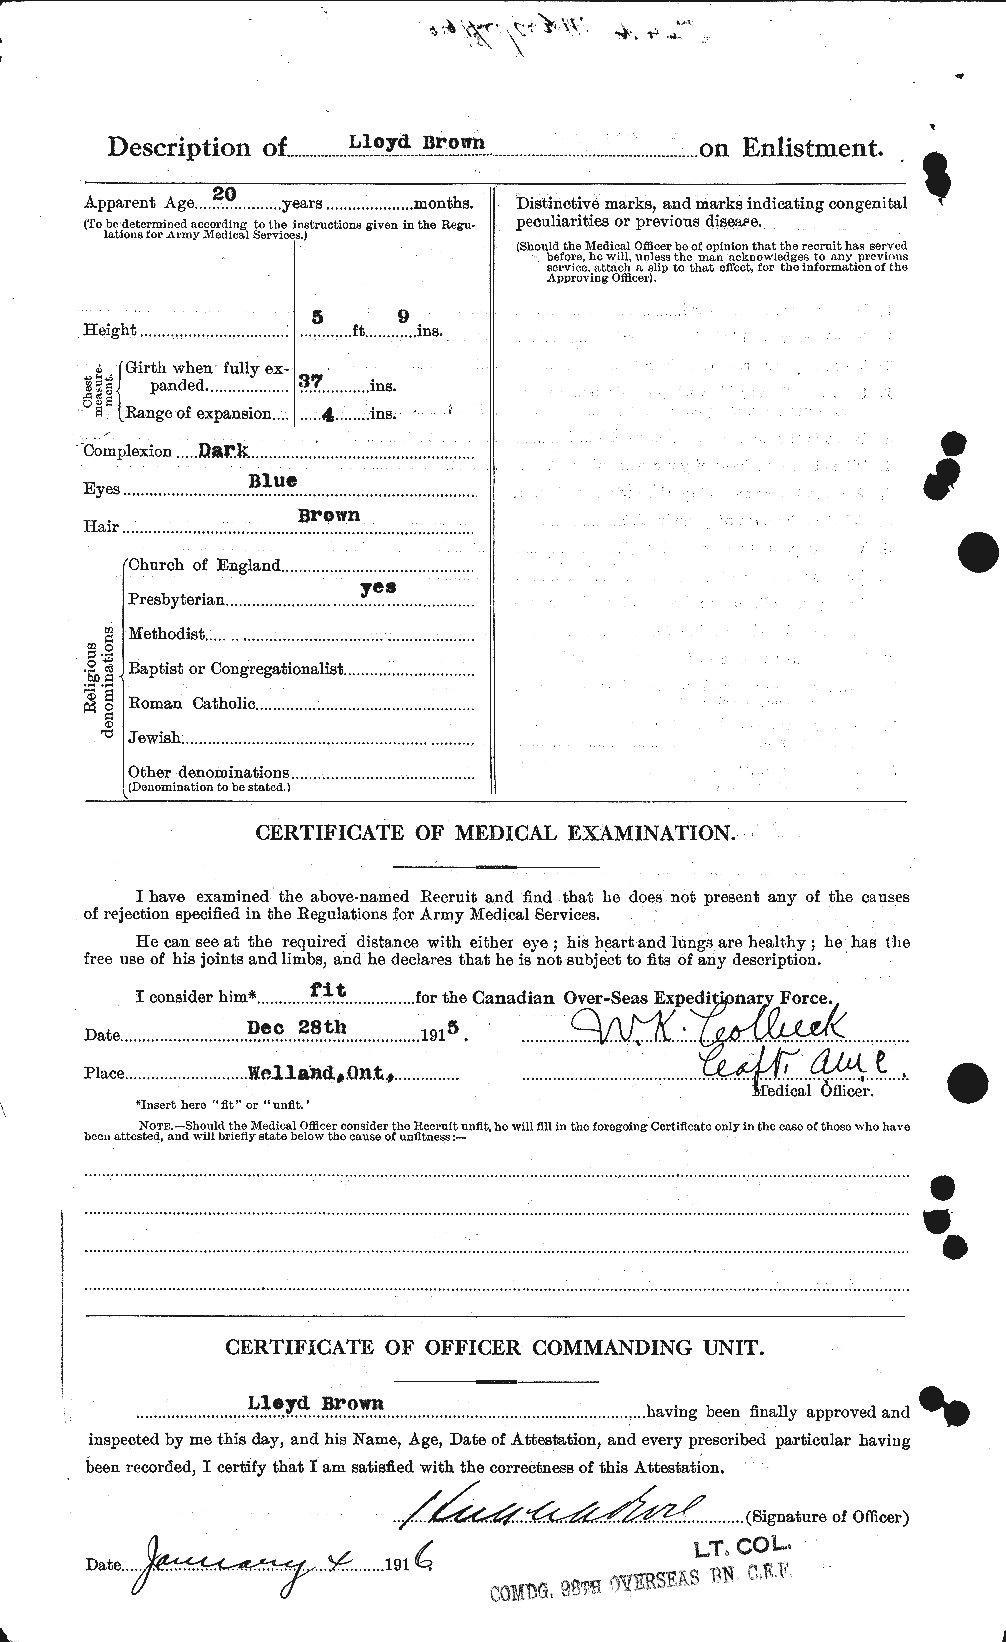 Dossiers du Personnel de la Première Guerre mondiale - CEC 266326b